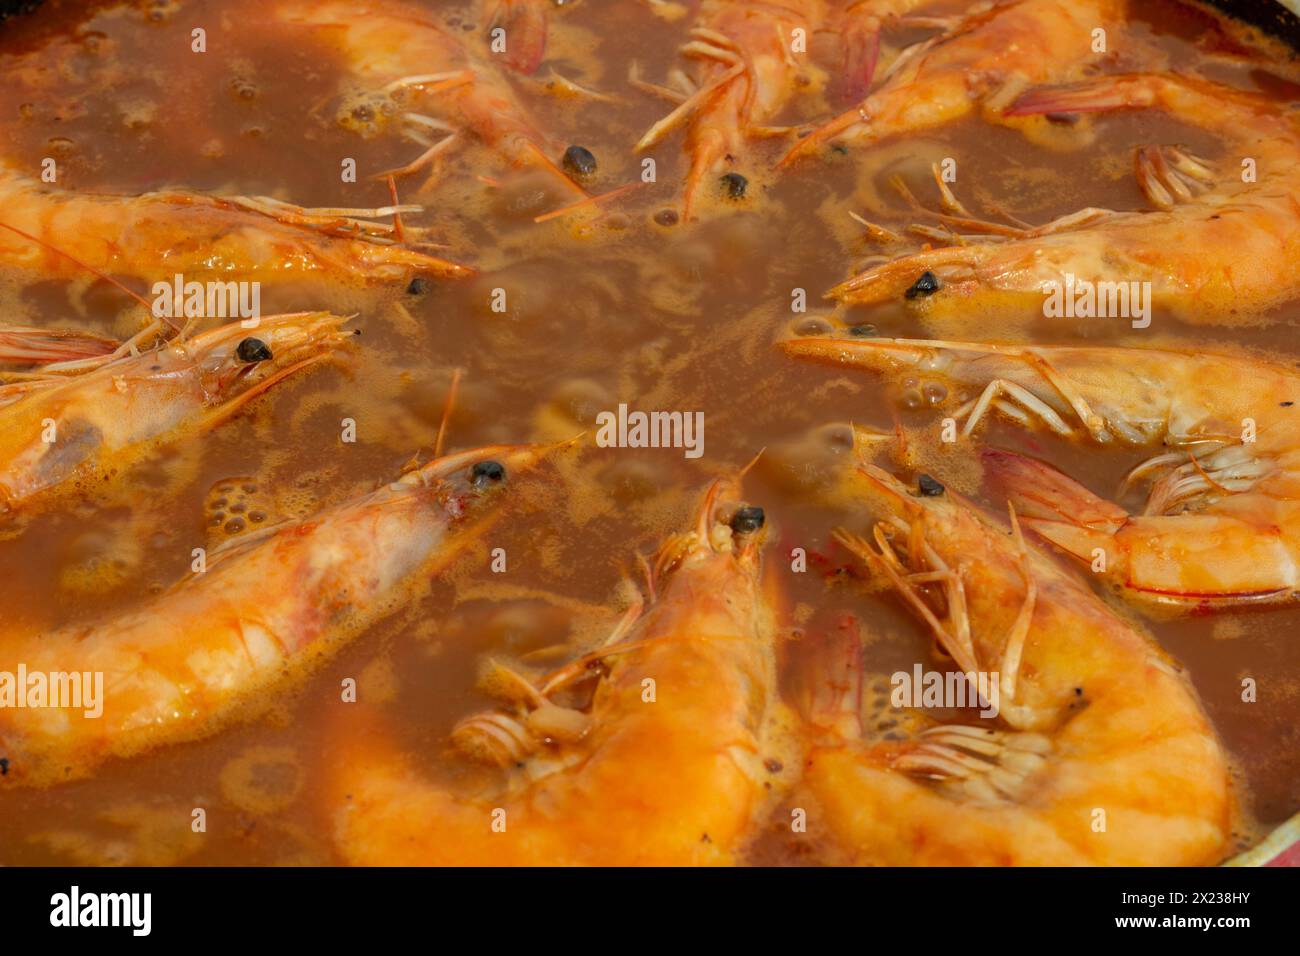 Découvrez l'harmonie culinaire tandis que les crevettes dorées rejoignent le mélange vibrant de saveurs de la traditionnelle paella espagnole, enrichissant chaque bouchée de s. Banque D'Images